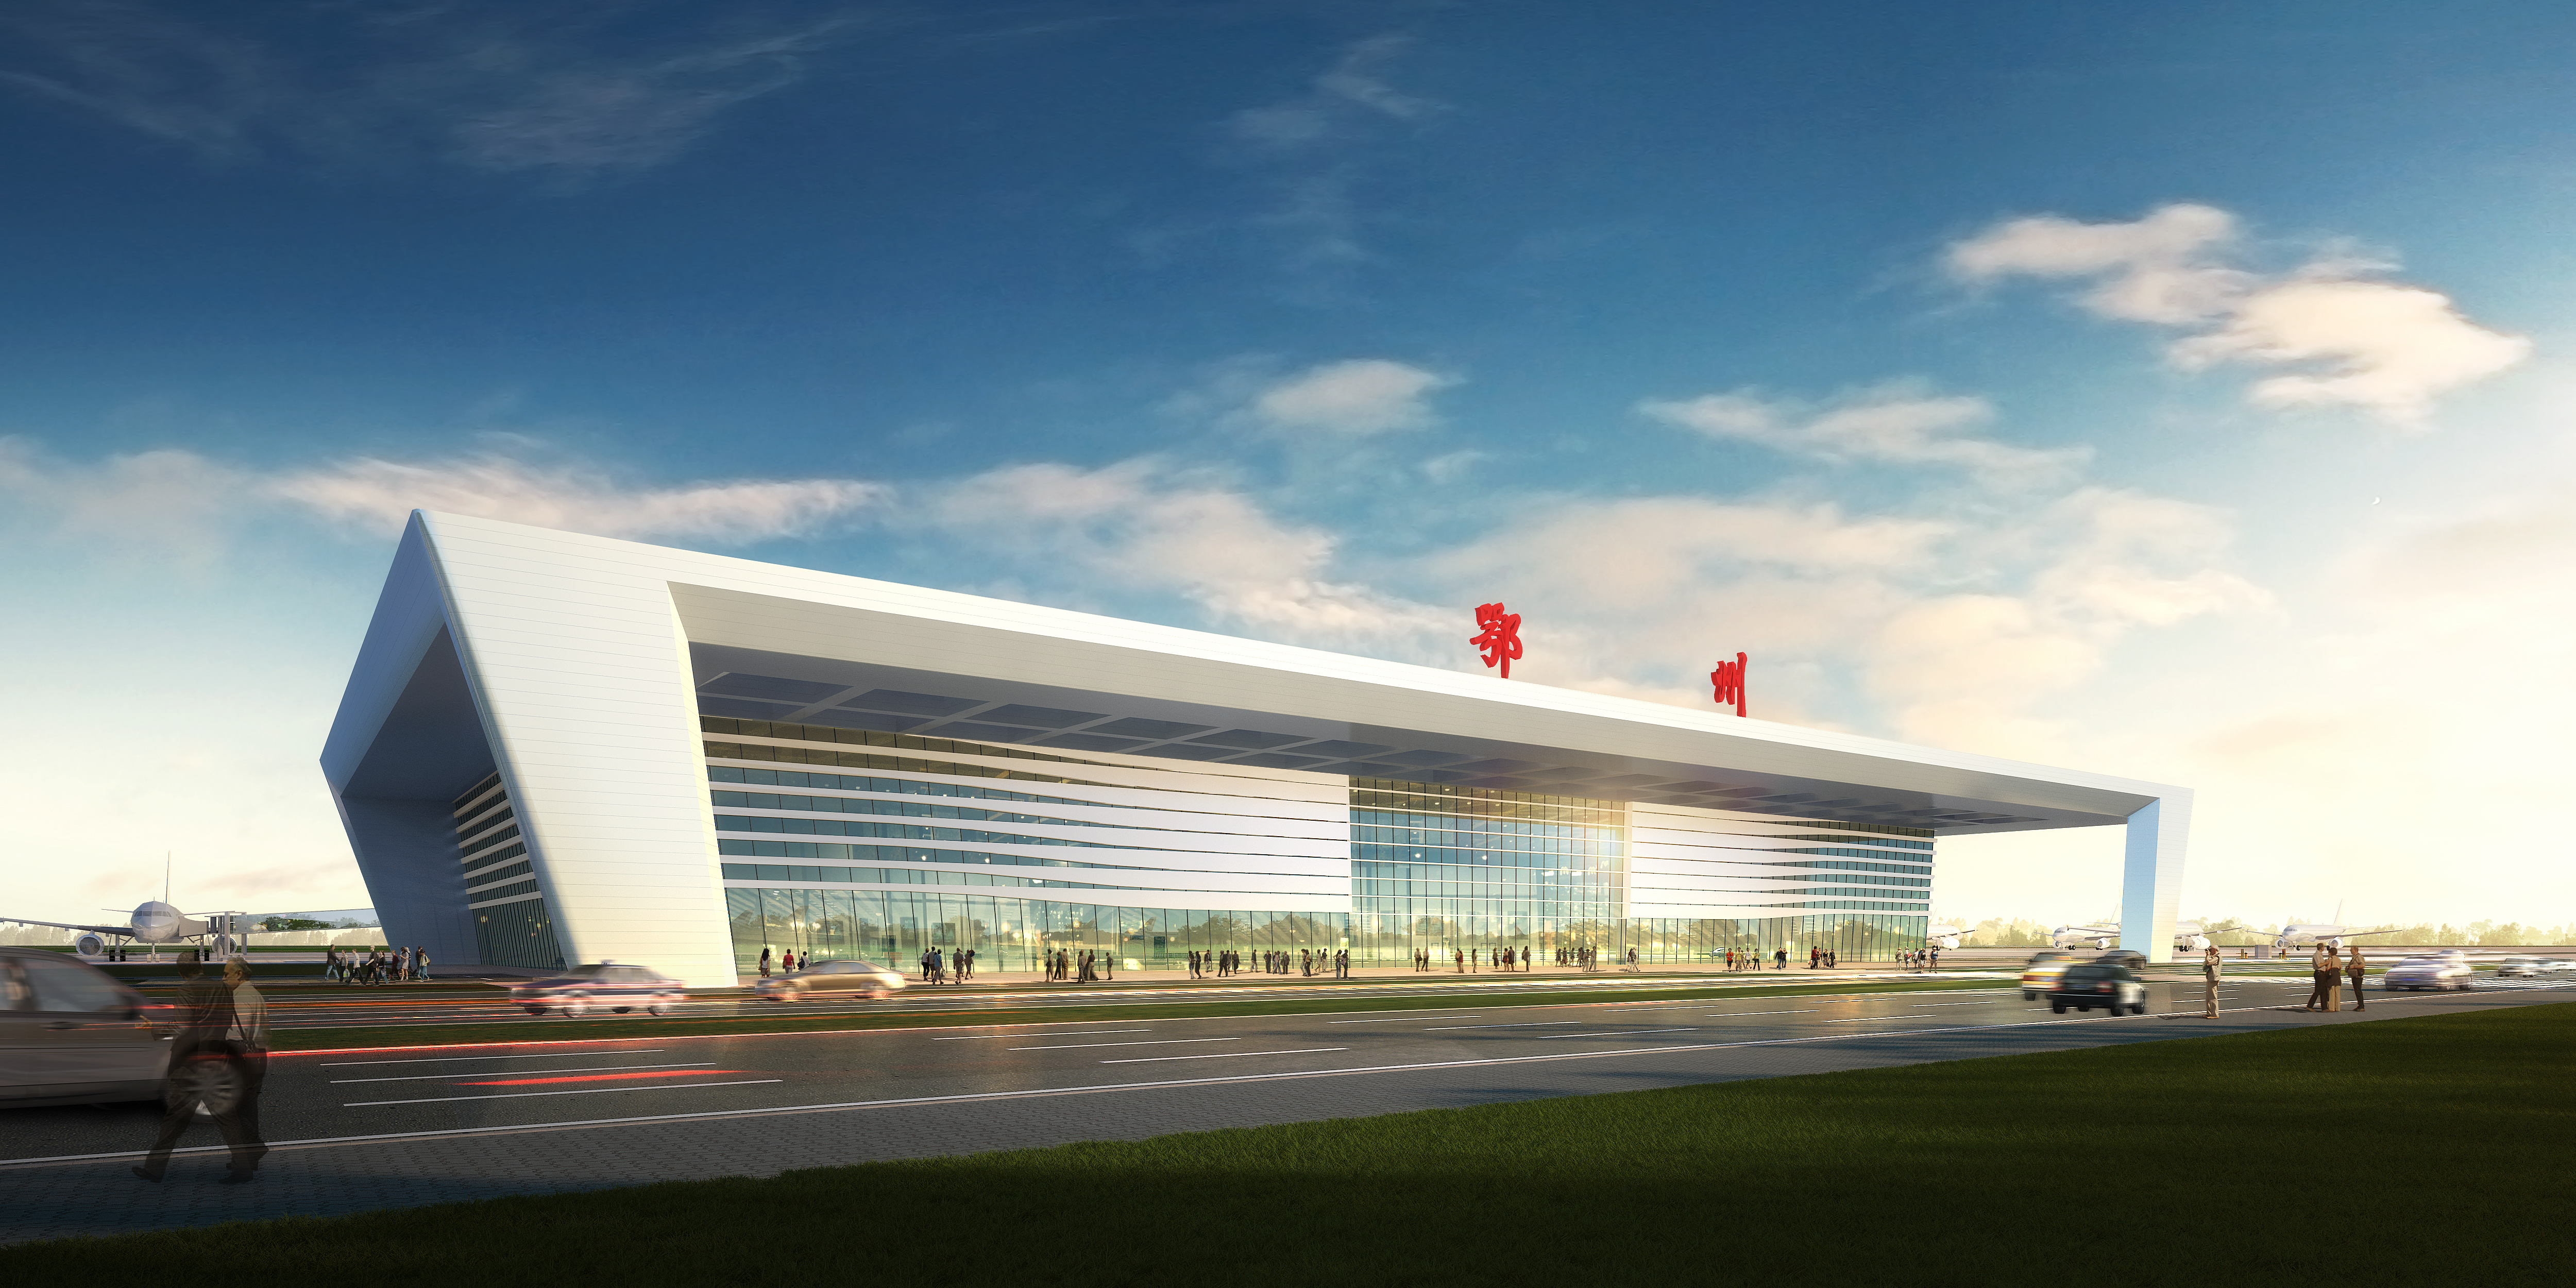 鄂州机场航站楼是鄂州民用机场的标志性建筑之一,首期工程按满足2025